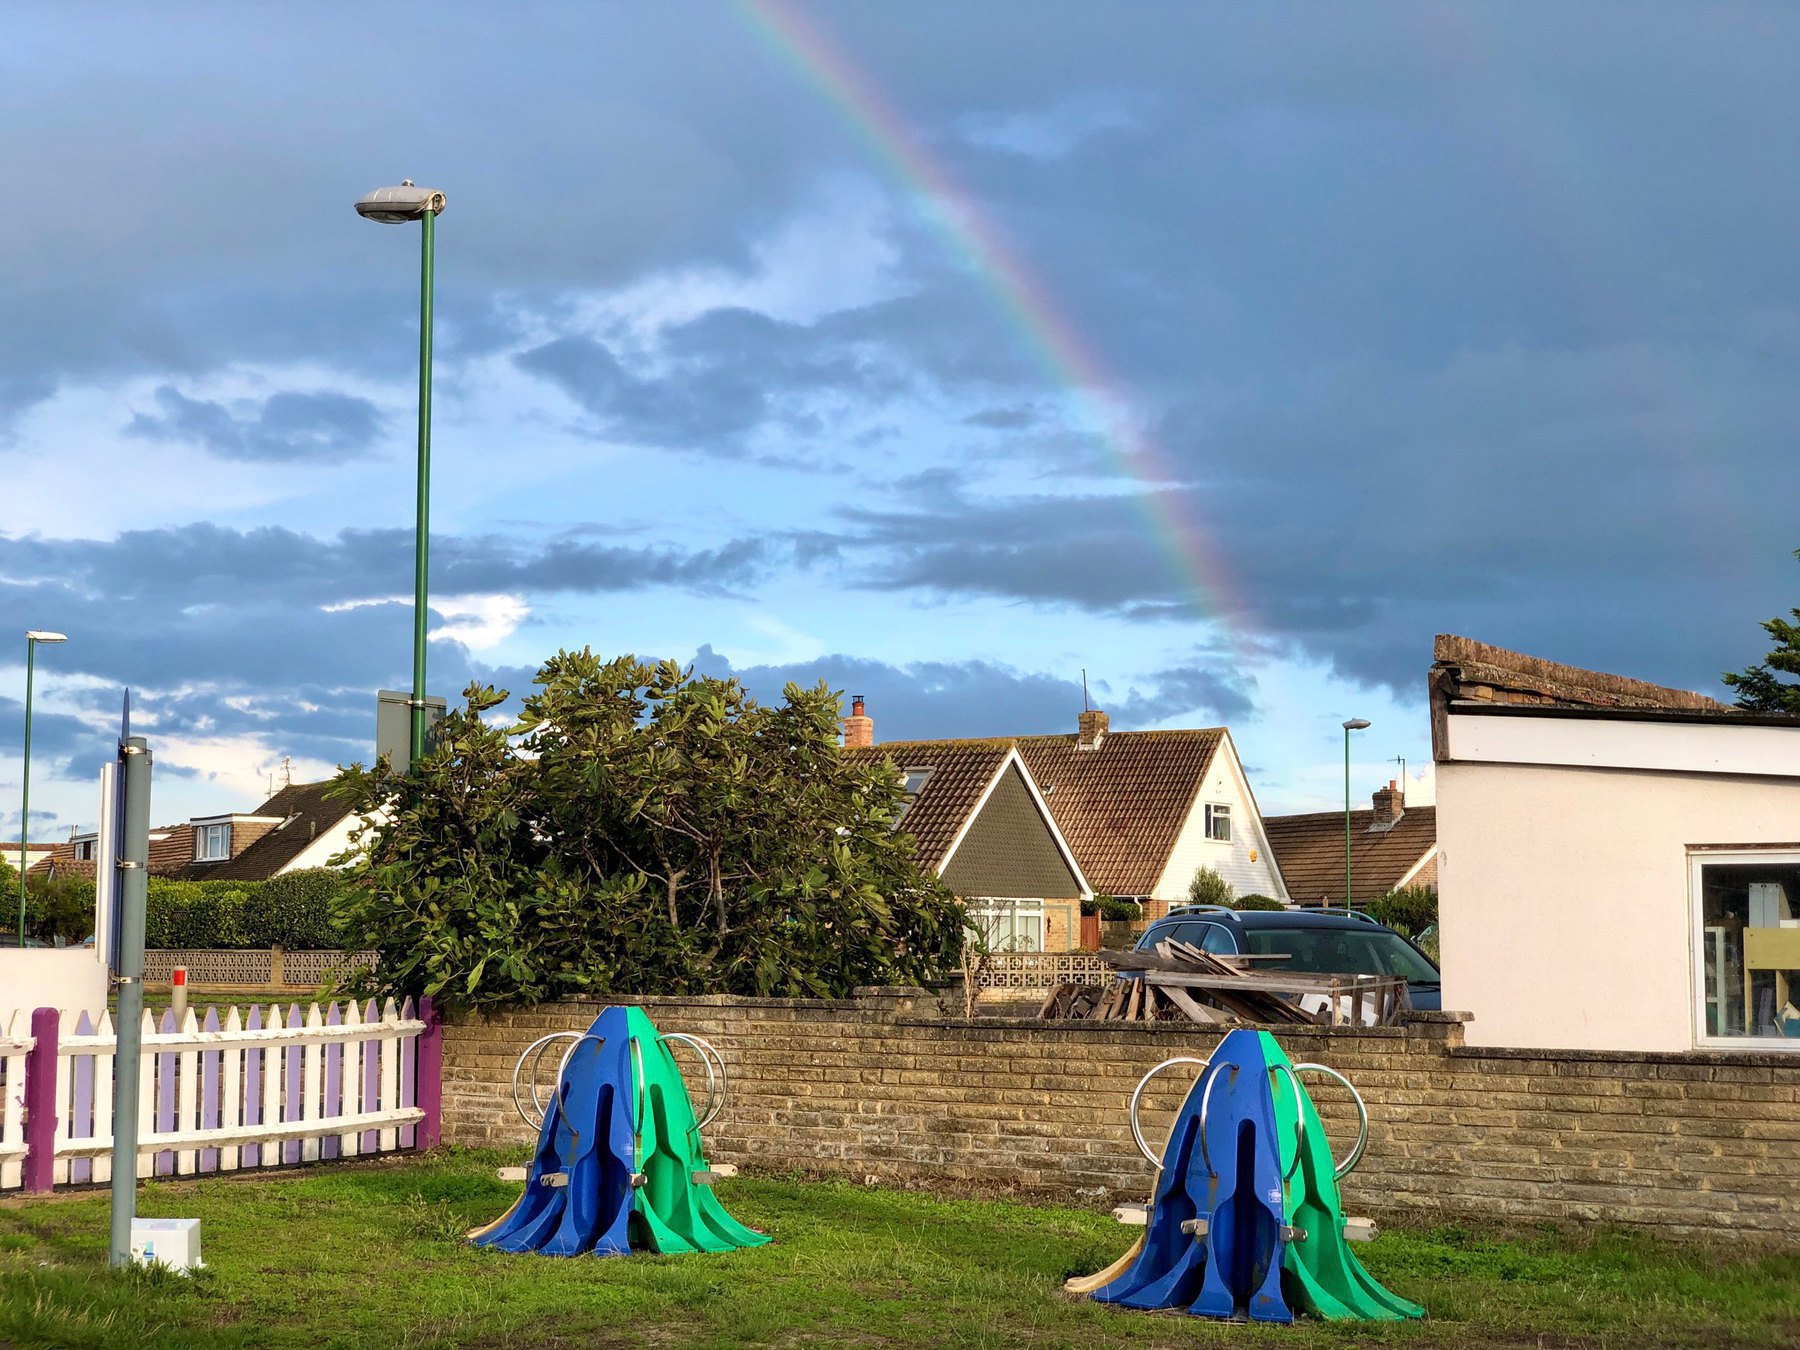 A rainbow over the houses of Shoreham Beach. 